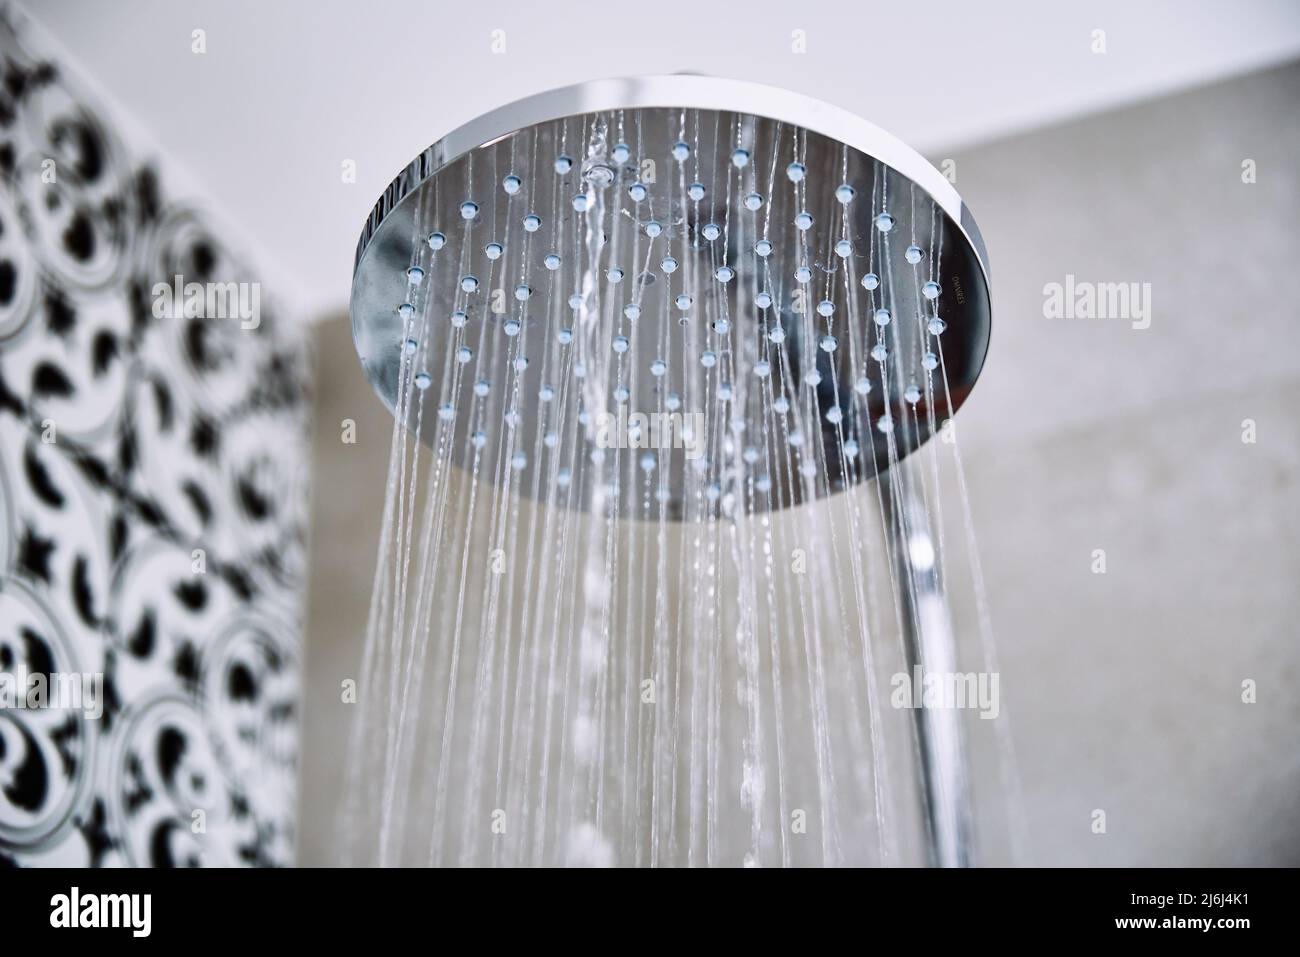 https://c8.alamy.com/comp/2J6J4K1/water-flowing-from-shower-head-in-bathroom-2J6J4K1.jpg